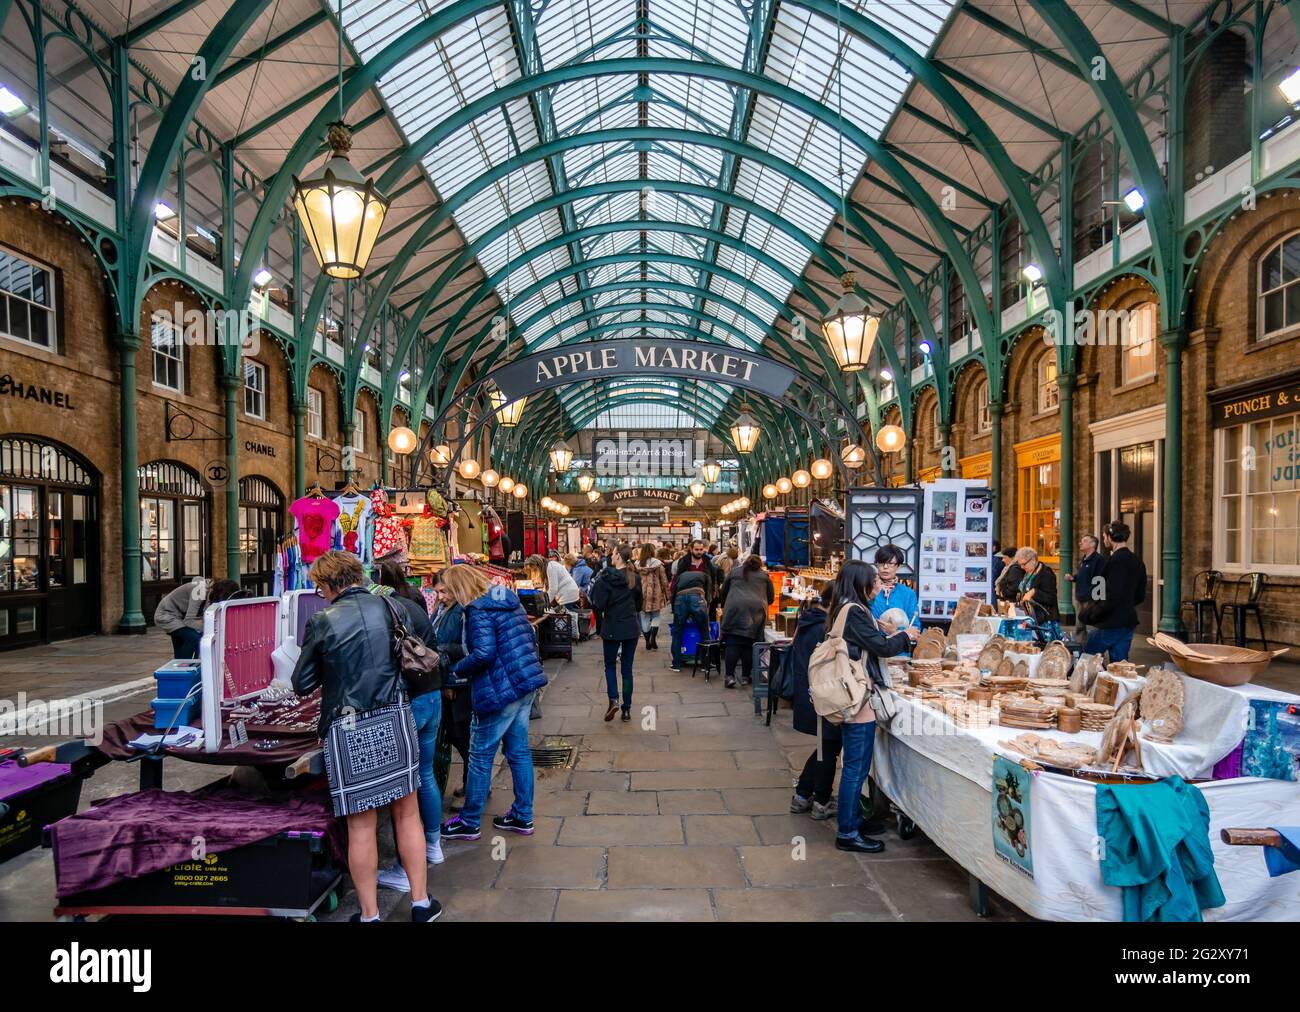 Londra - 3 settembre 2015: Il mercato di Apple a Covent Garden, una famosa galleria di negozi di antiquariato, gioielli, abbigliamento e regali. Foto Stock